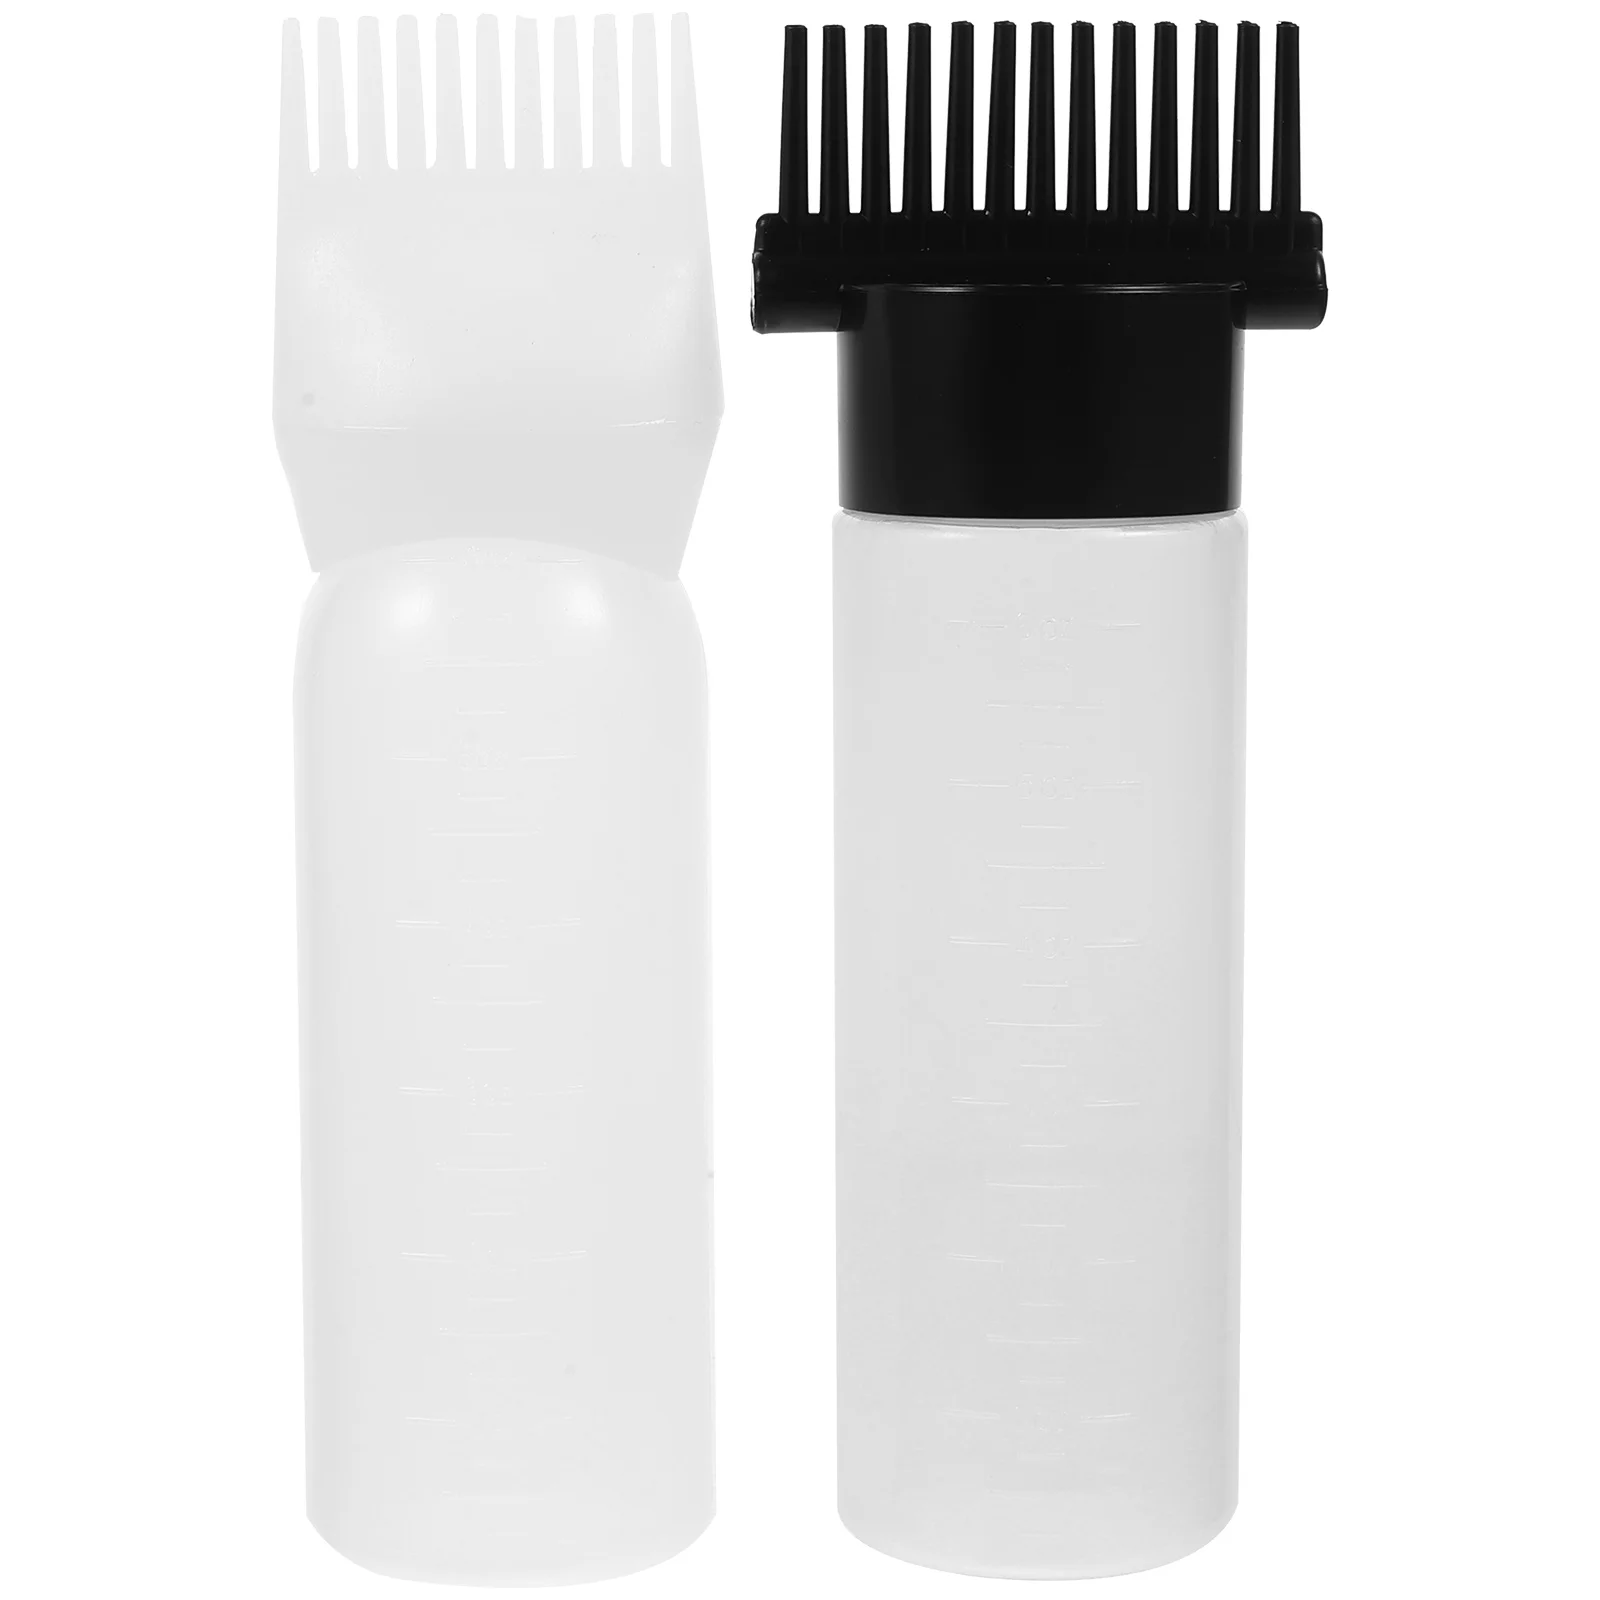 

2 Pcs Hair Dye Oil Dispenser Massage Brush Comb Root Applicator Bottle for Oiling Scalp